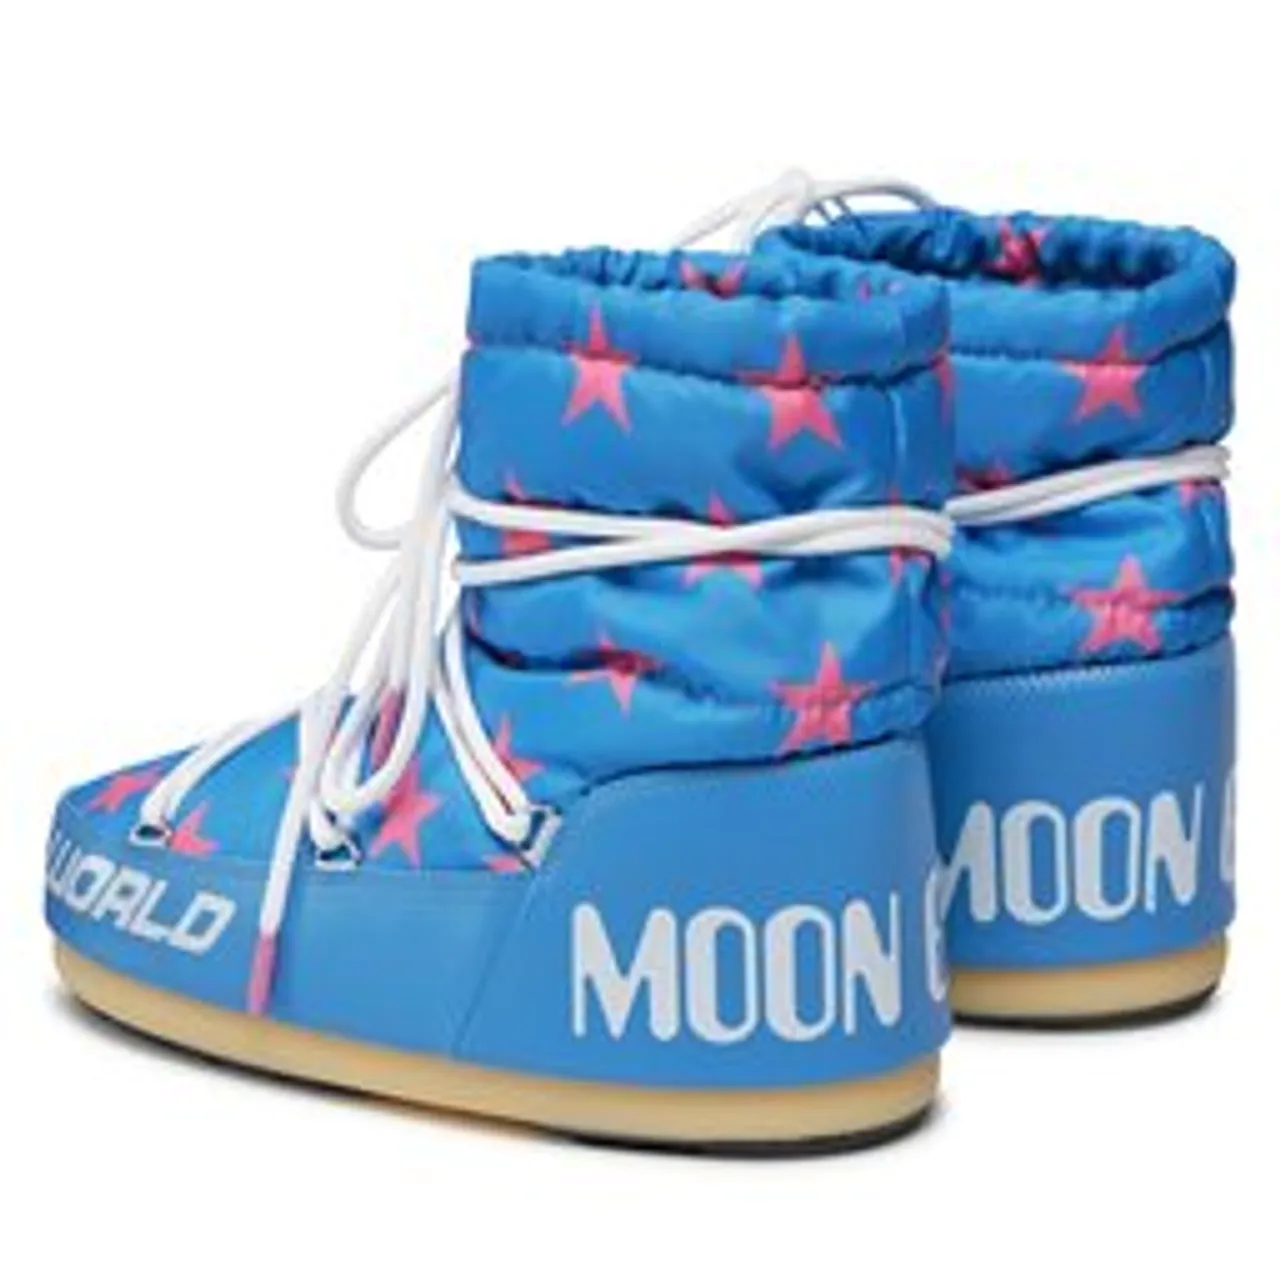 Schneeschuhe Moon Boot Light Low Stars 14601700001 Alaskan Blue / Pink 001